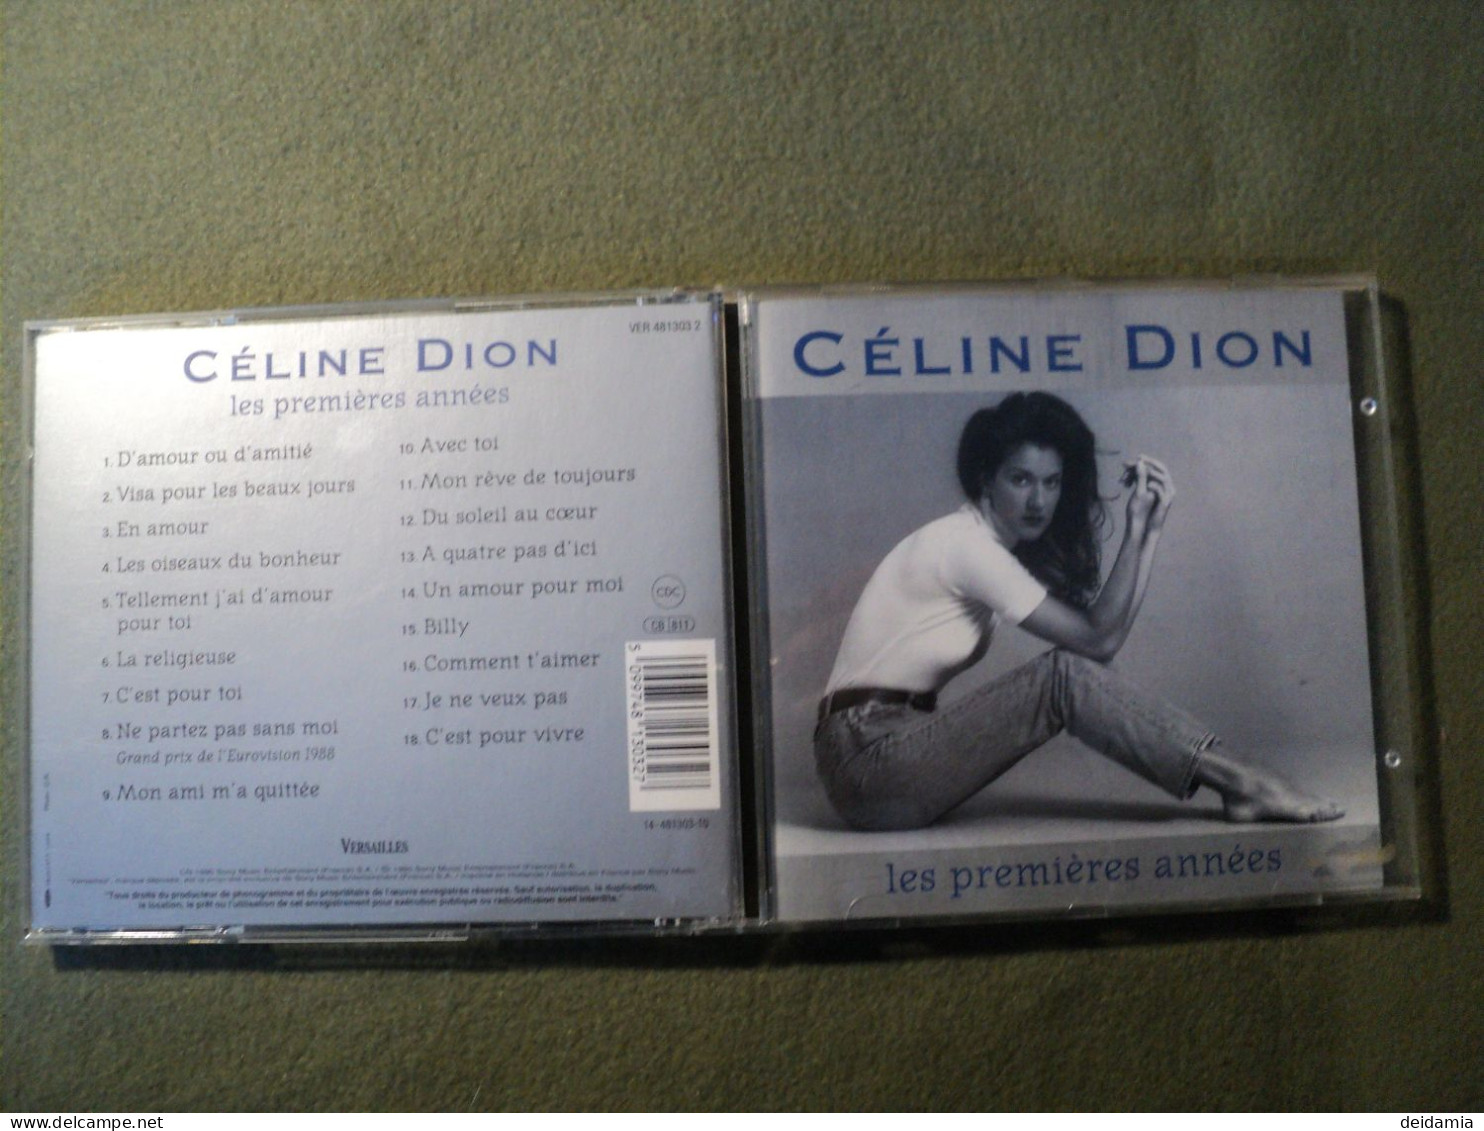 CELINE DION. CD 18 TITRES DE 1995. VERSAILLES 481 303 2 D AMOUR OU D AMITIE / VISA POUR LES BEAUX JOURS / EN AMOUR / LES - Other - French Music